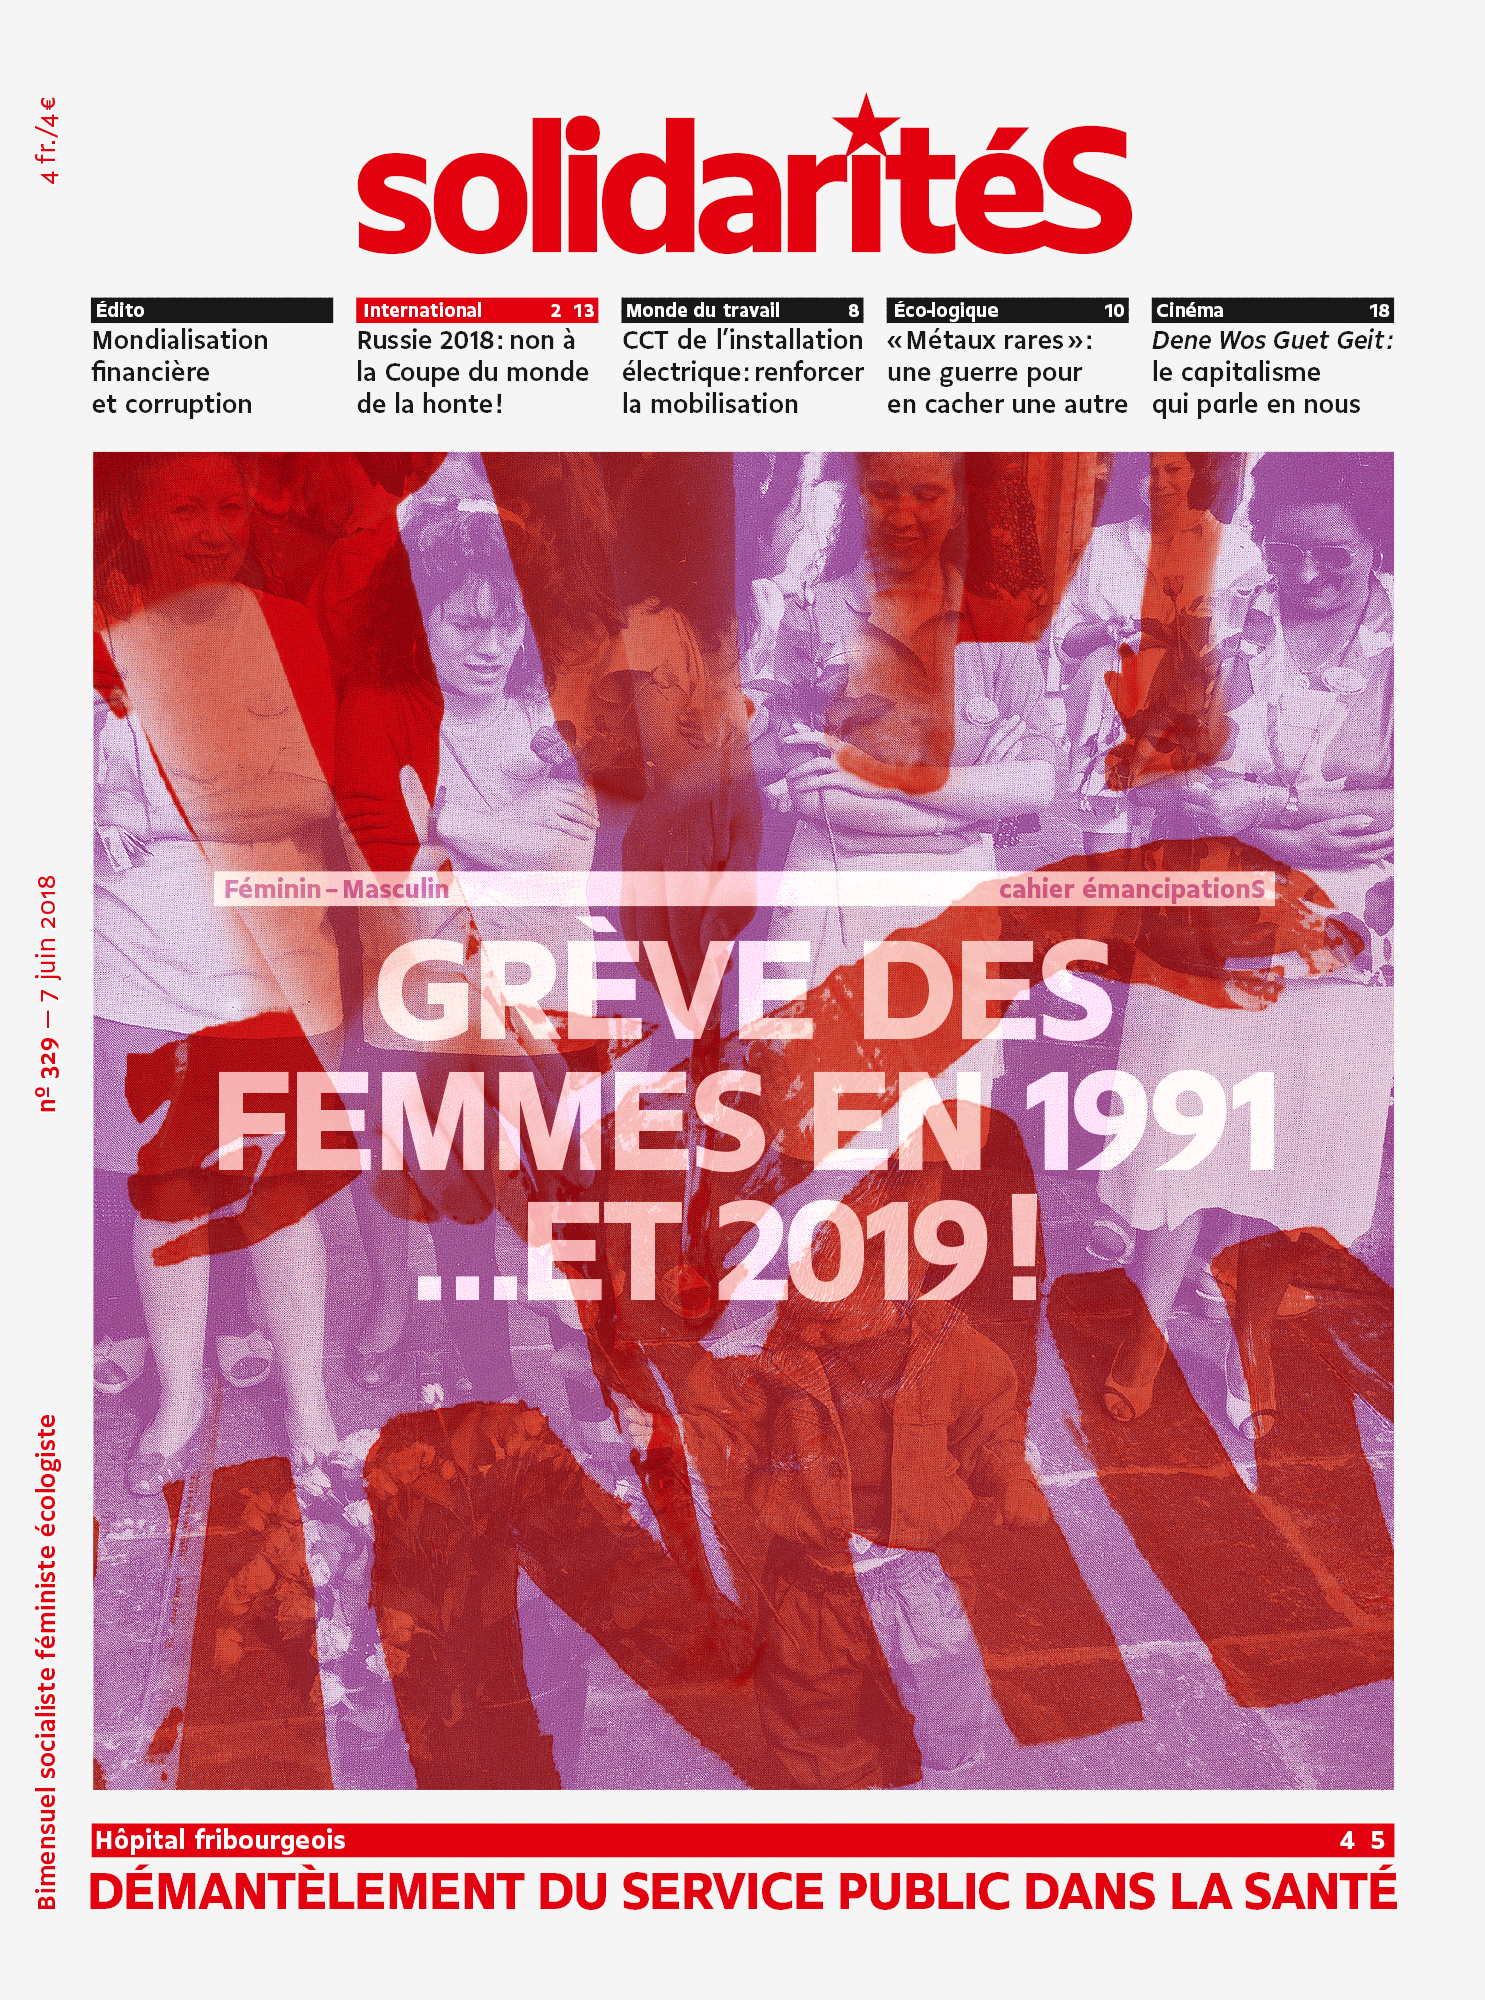 Couverture du numéro 329 du bimensuel solidaritéS: Grève des femmes en 1991 …et en 2019!